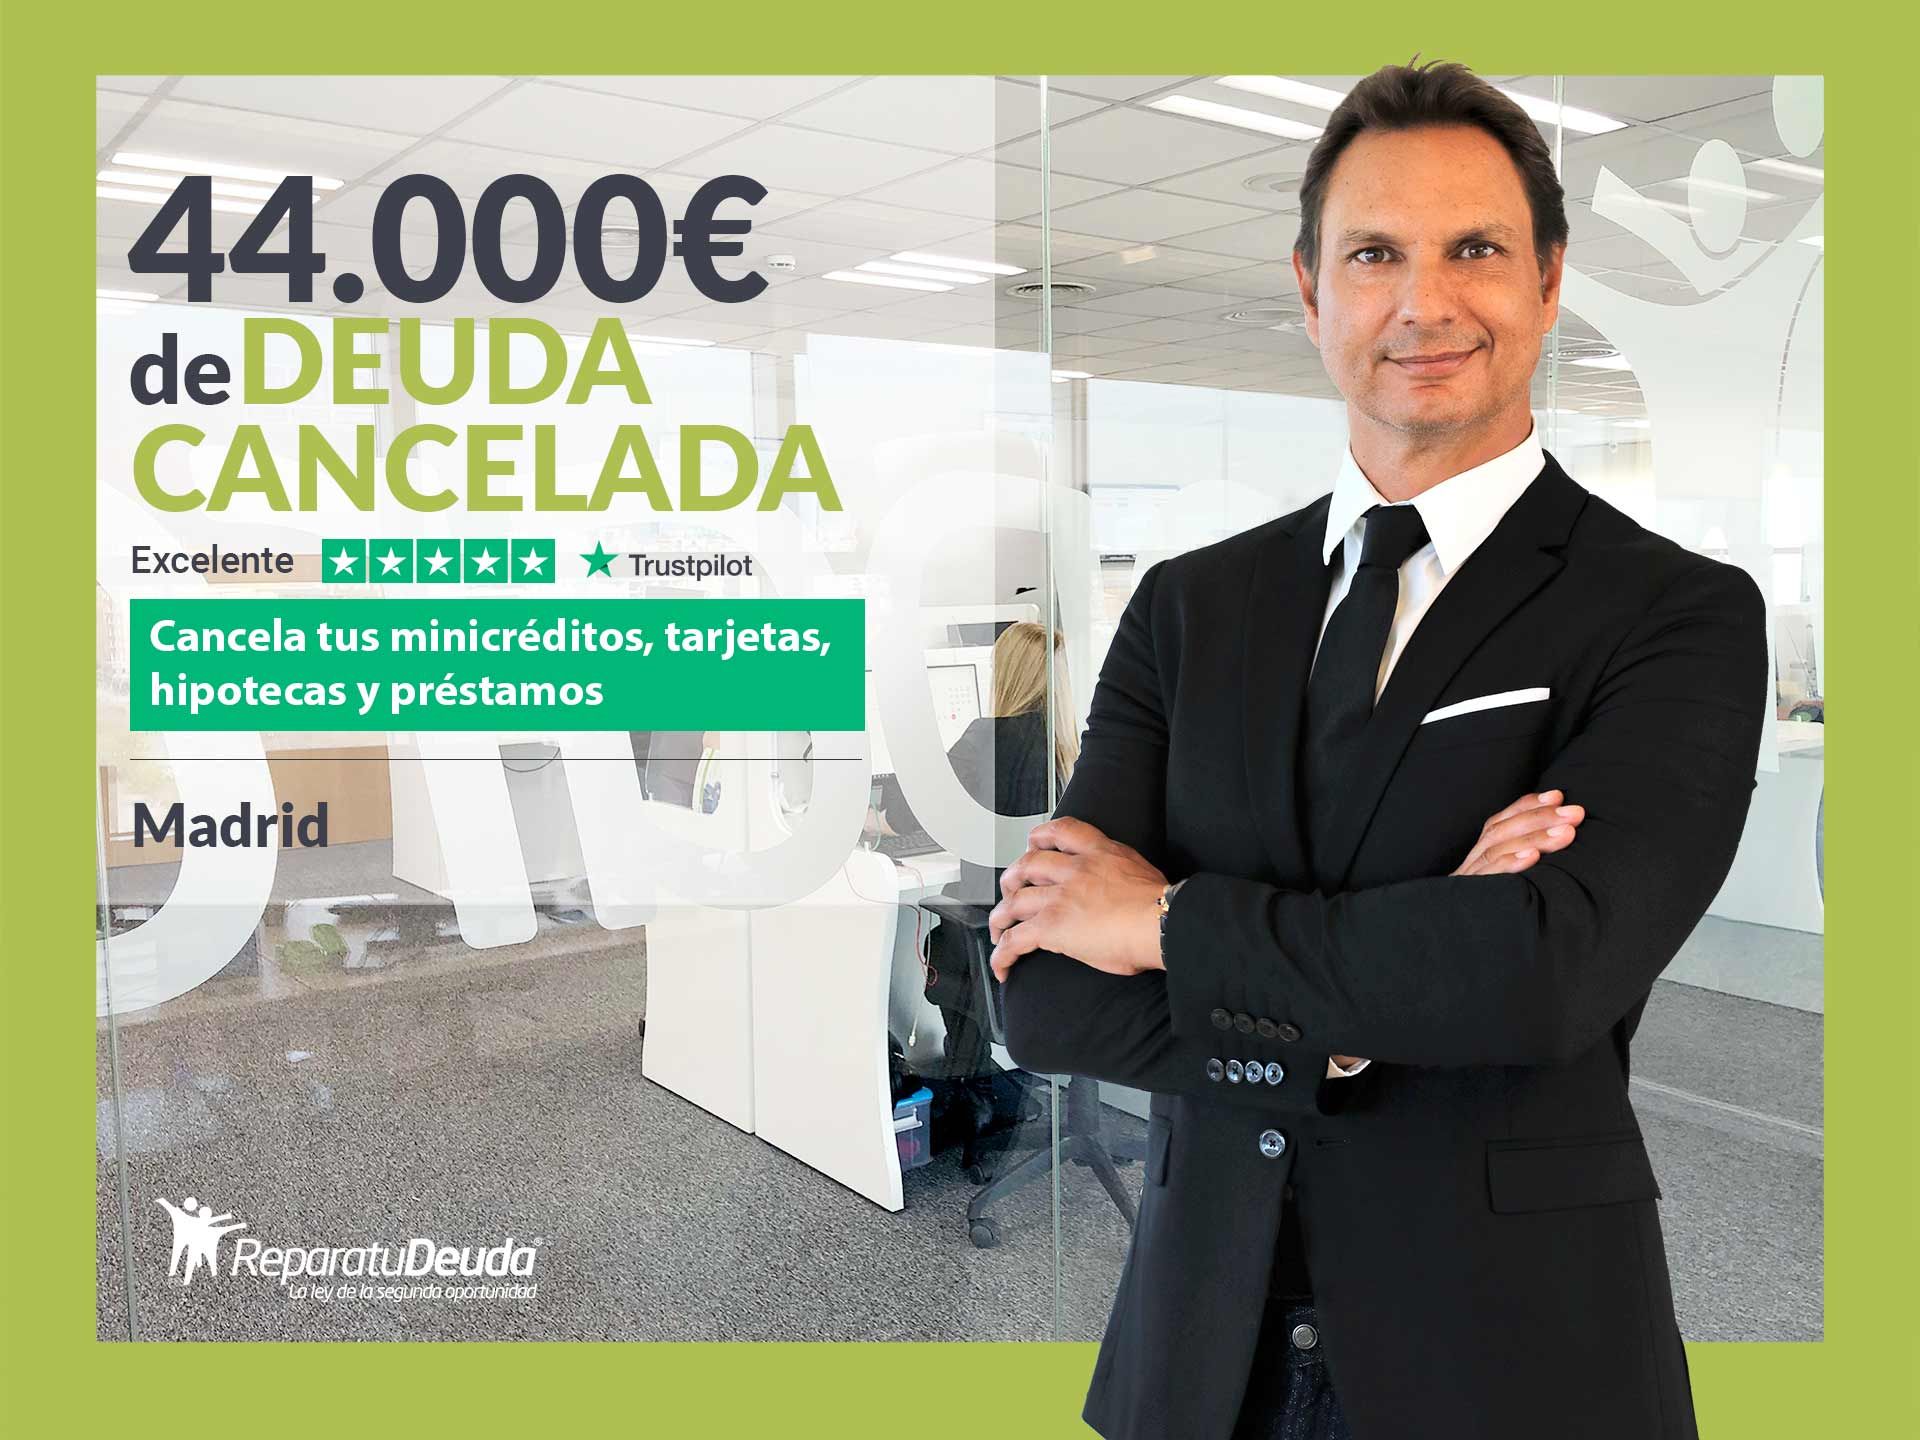 Repara tu Deuda Abogados cancela 44.000? en Madrid con la Ley de Segunda Oportunidad